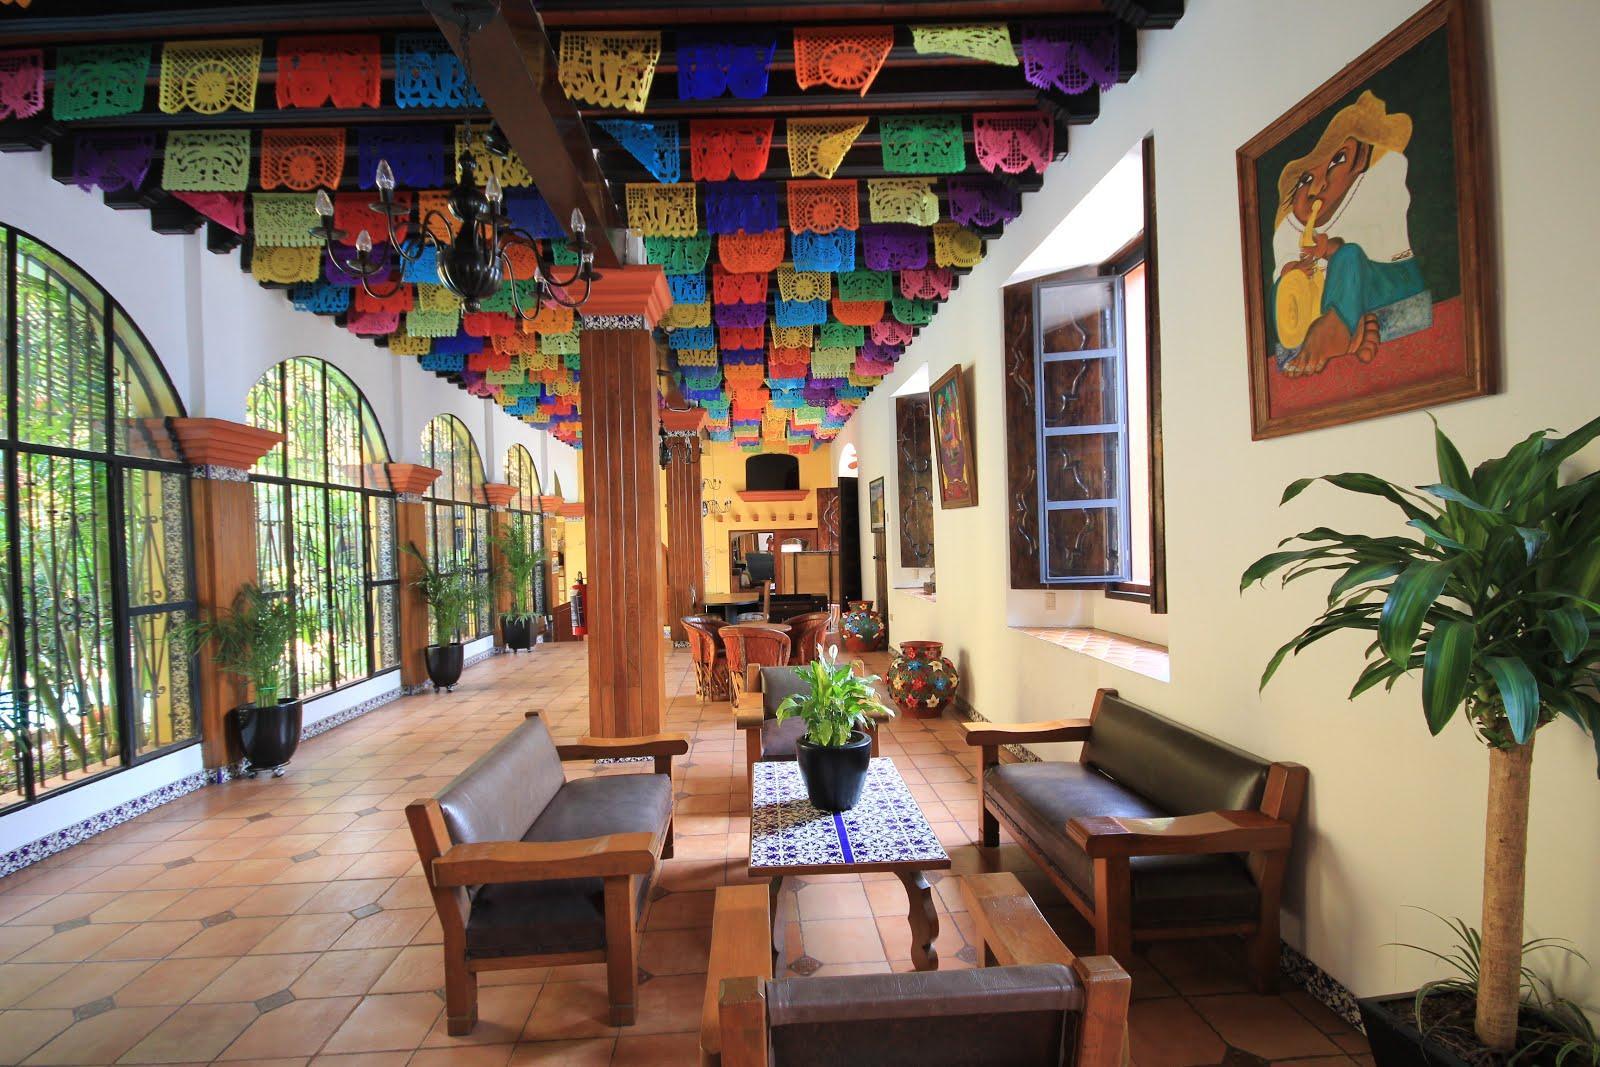 Hotel Oaxaca Real Exterior photo